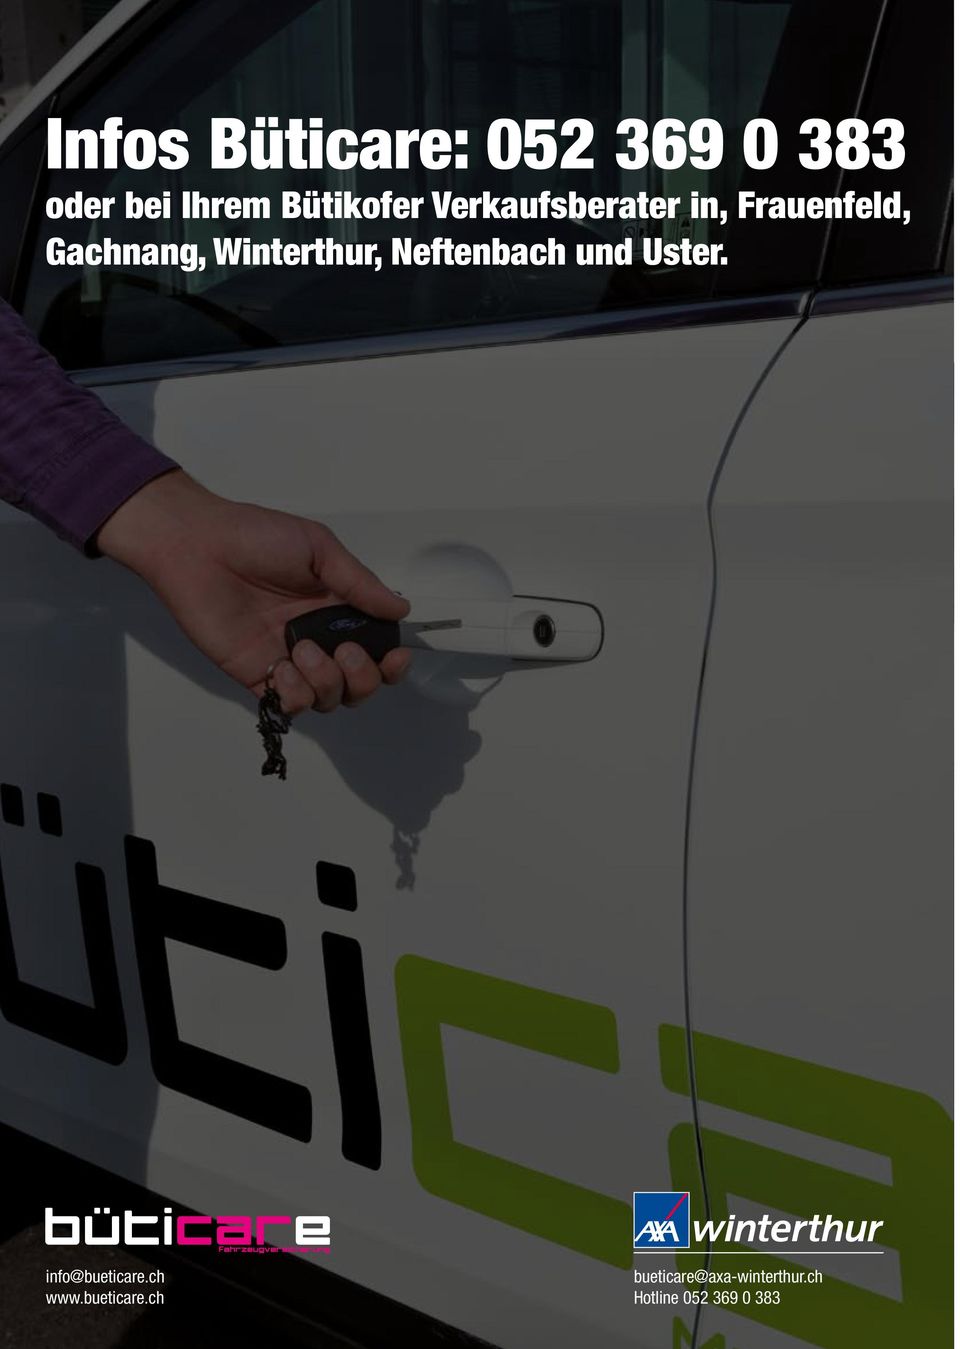 Winterthur, Neftenbach und Uster. info@bueticare.